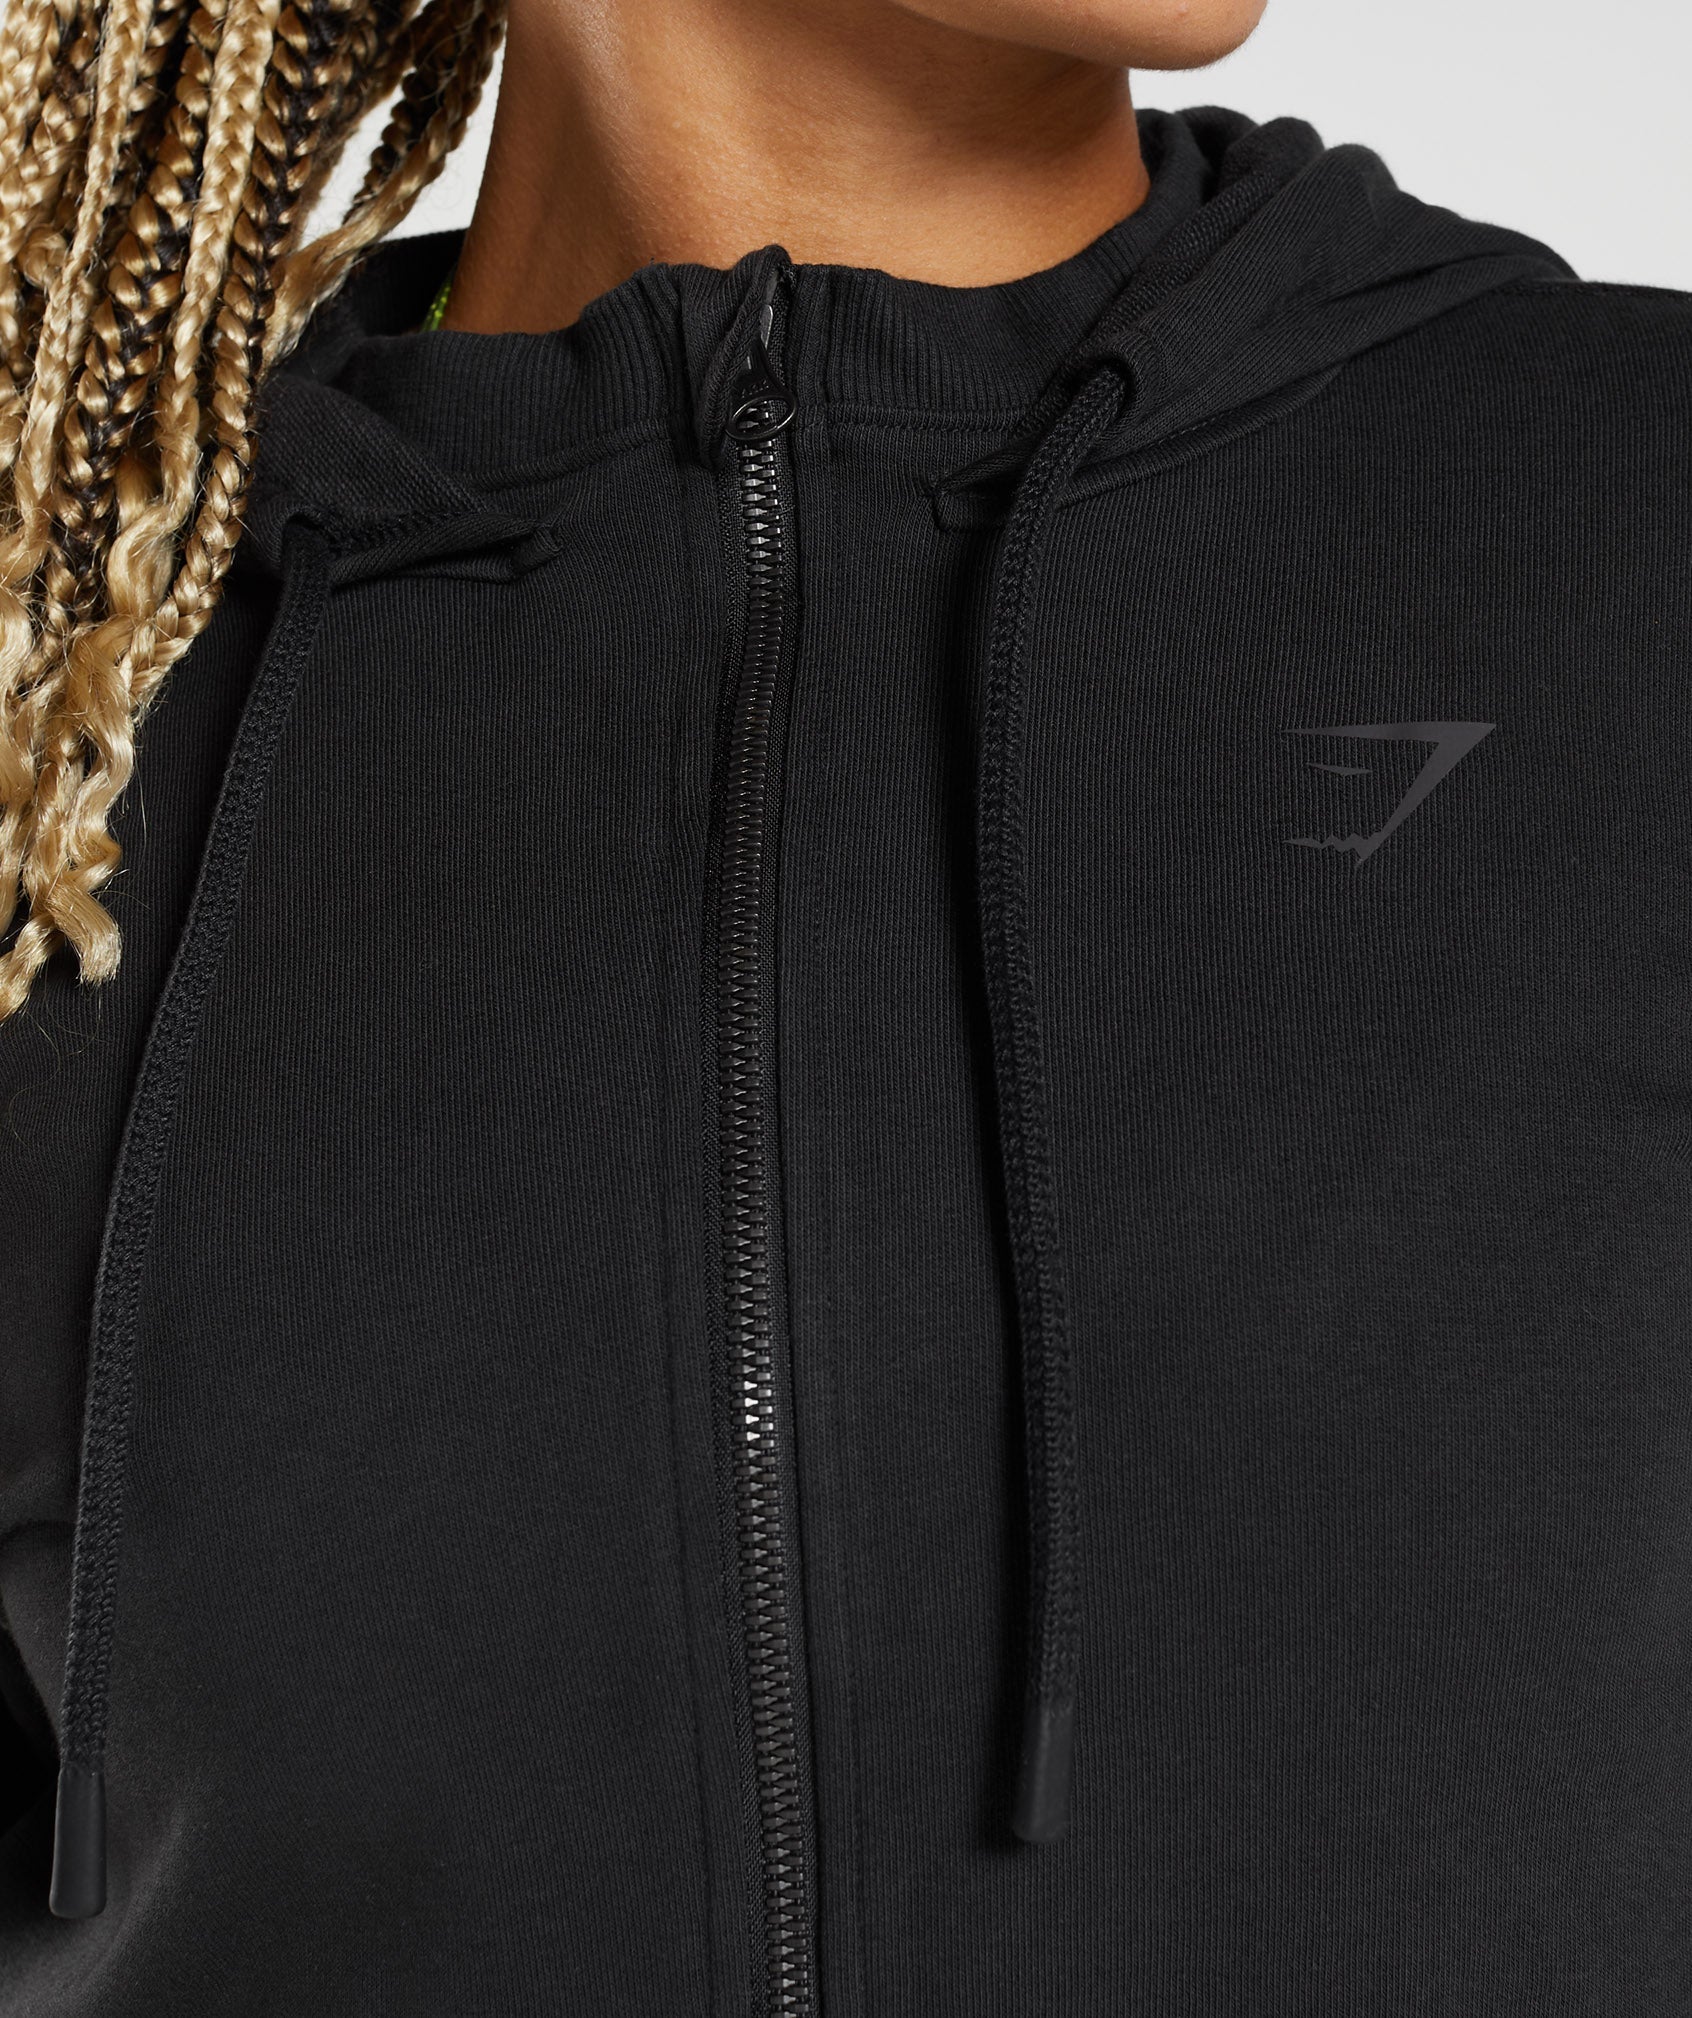 GS Power Cropped Zip Hoodie in Black